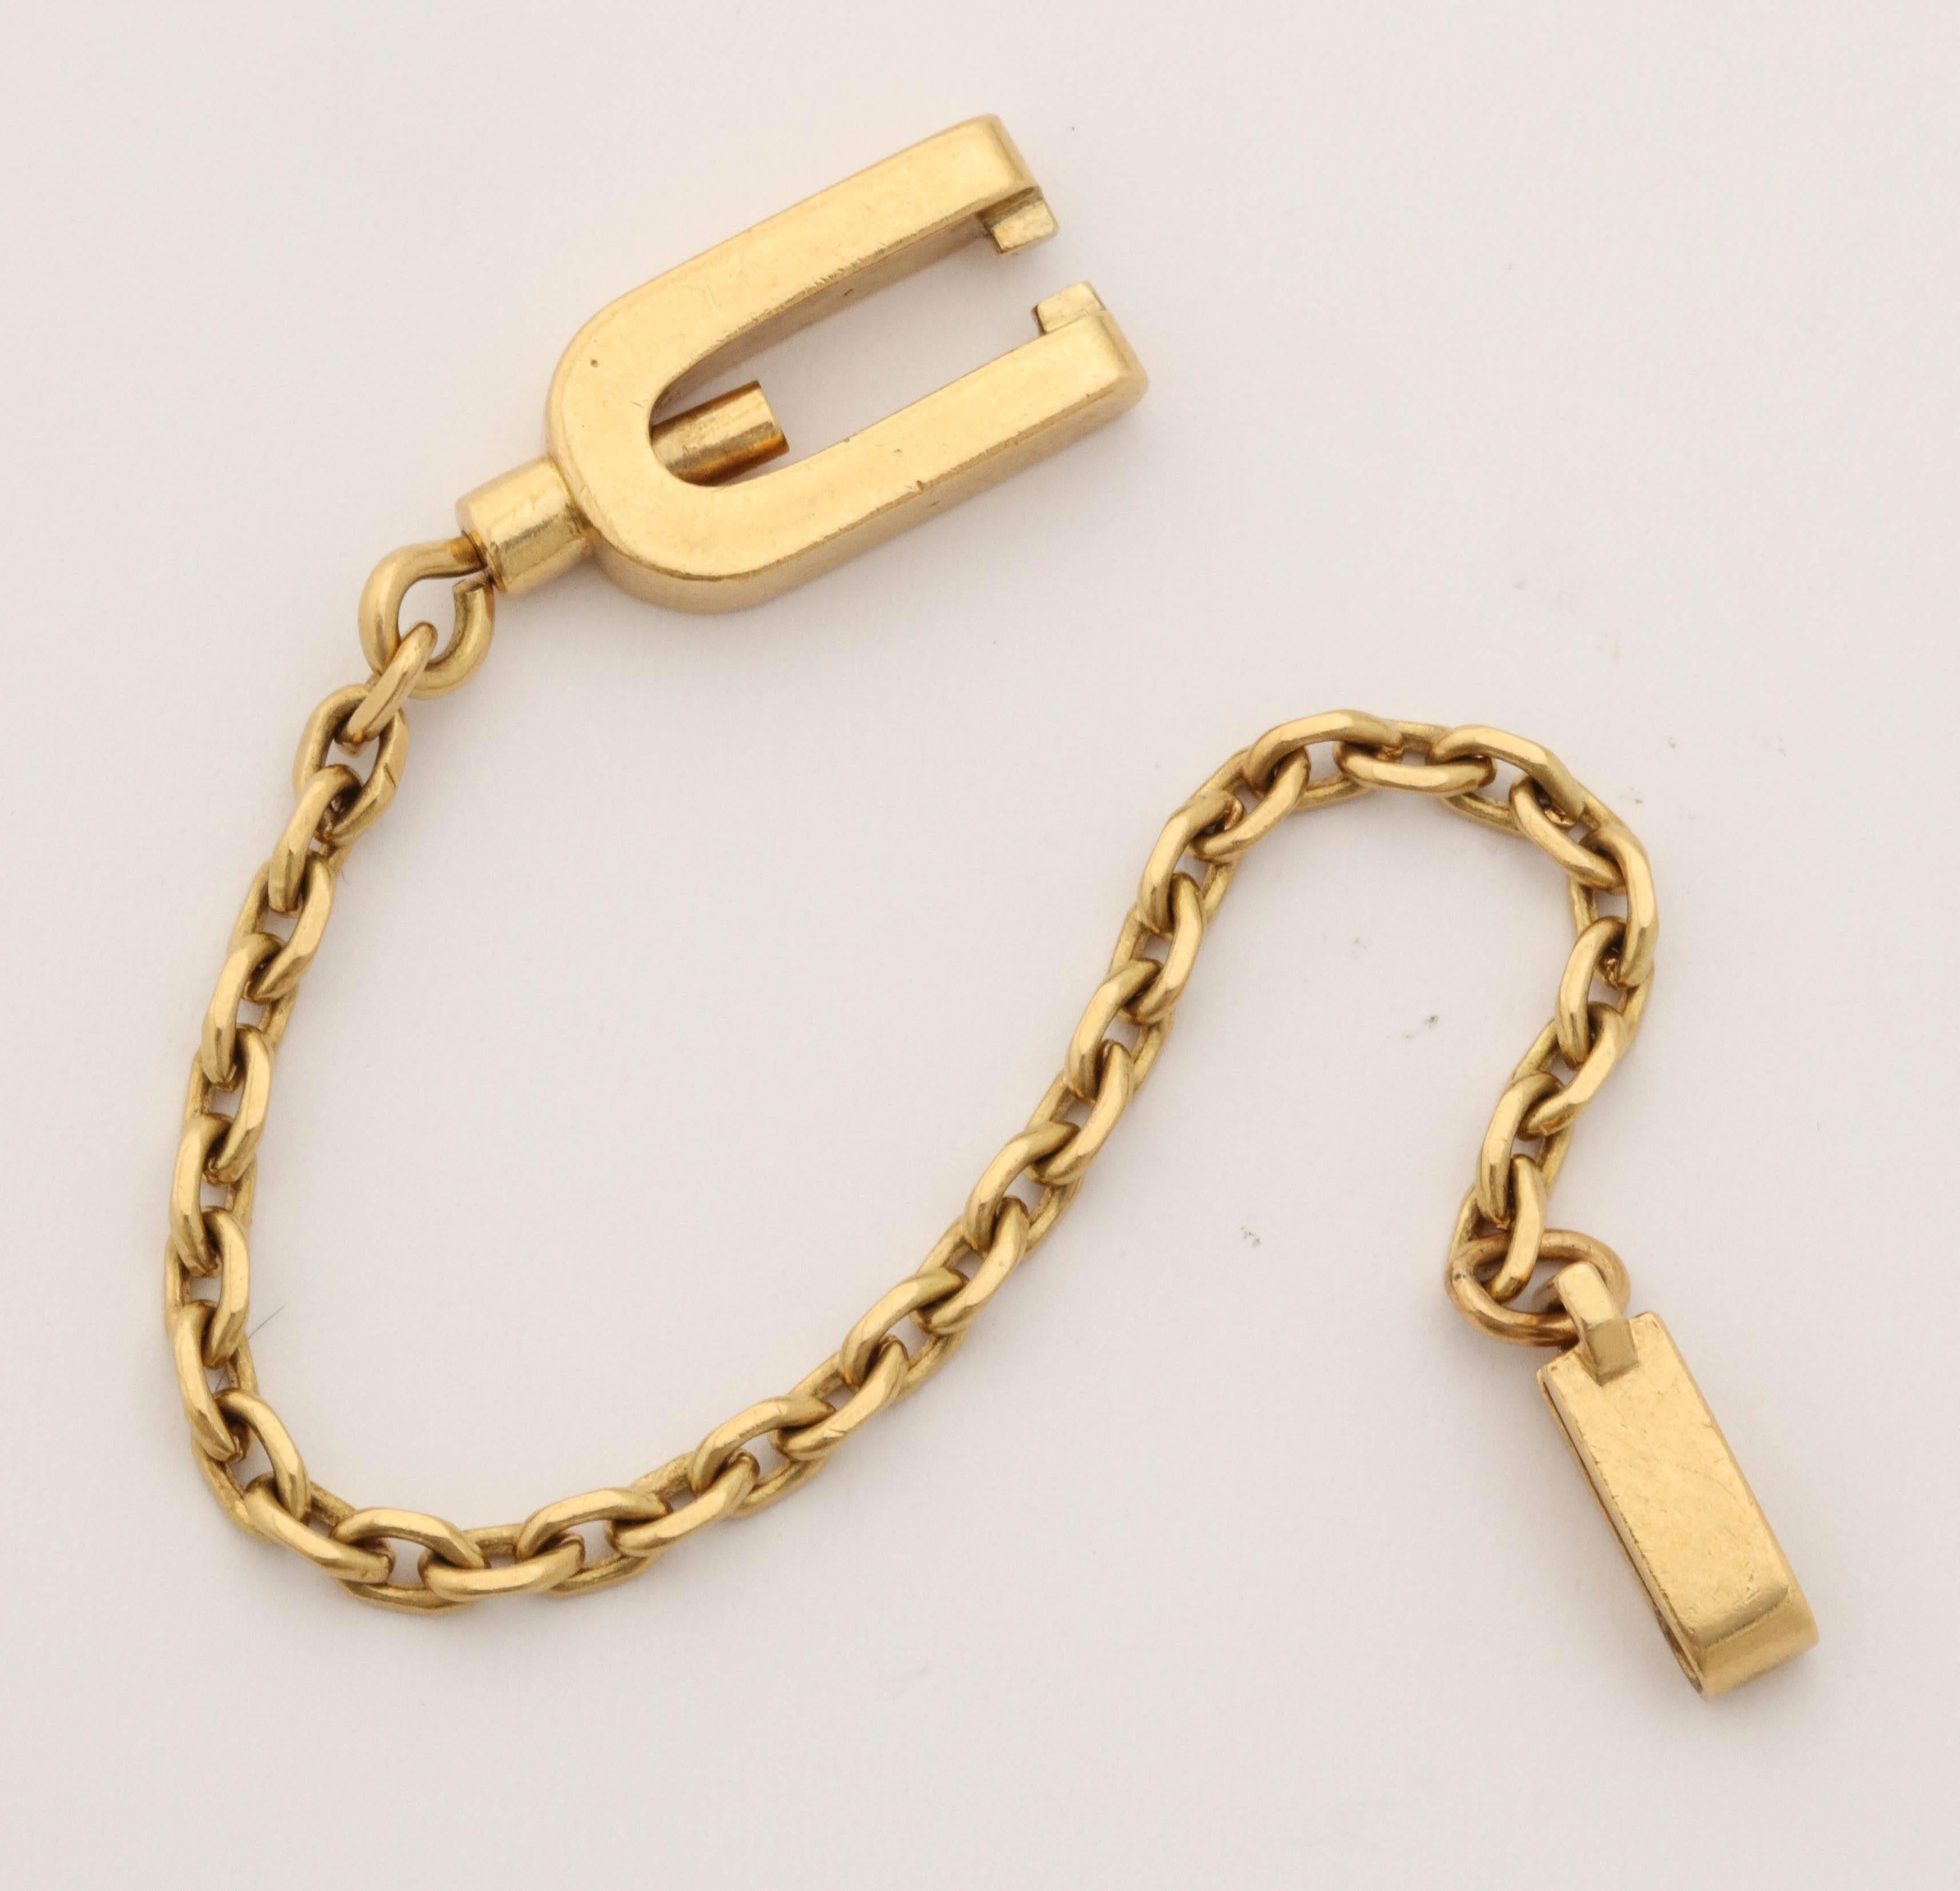 1950s Gubelin France Open Link Gold Lock Fancy Key Chain 1